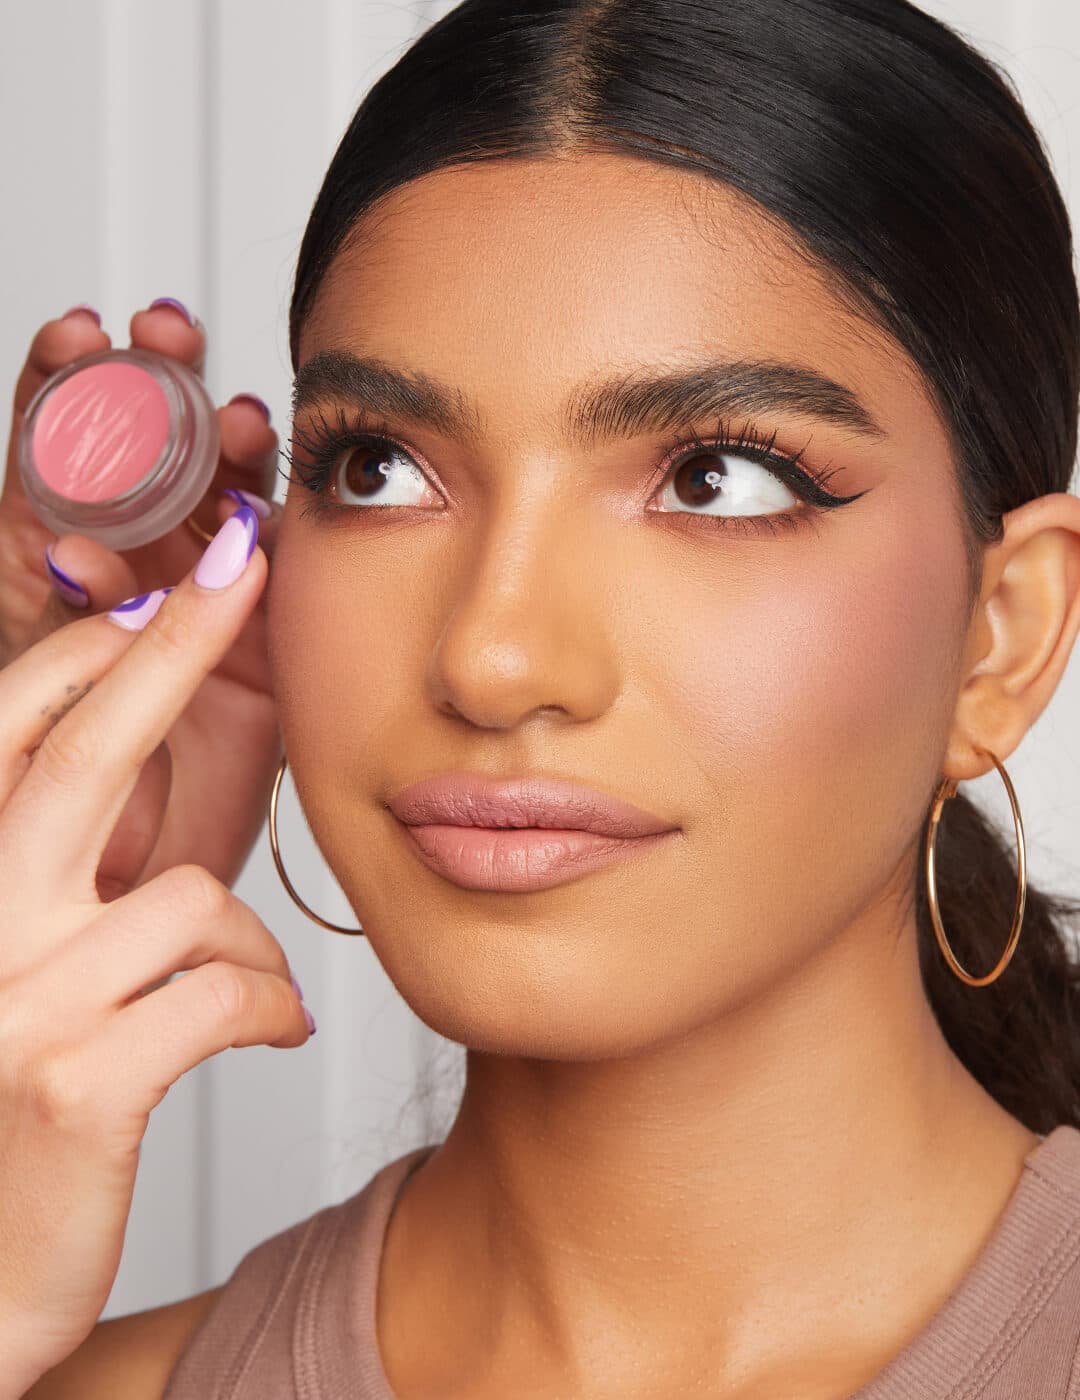 Makeup artist's hands applying cream blush on a model's cheek